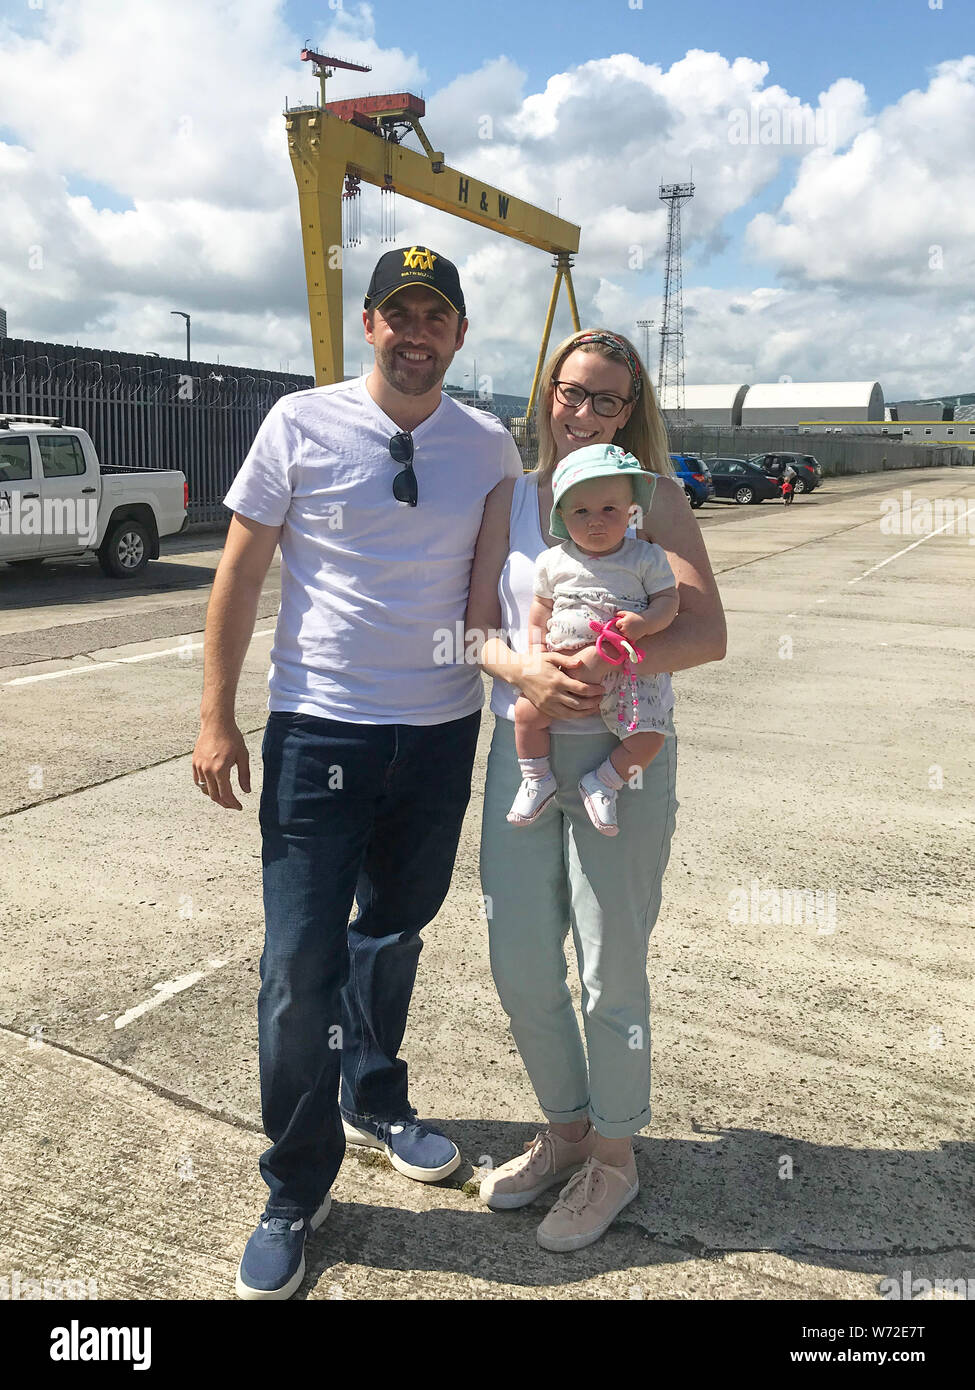 Security Operations manager Chris Neil avec sa partenaire Sarah Minford et leur bébé de six mois après la fille Neil Lacie événement familial à la protestation à l'Harland and Wolff à Belfast. Banque D'Images